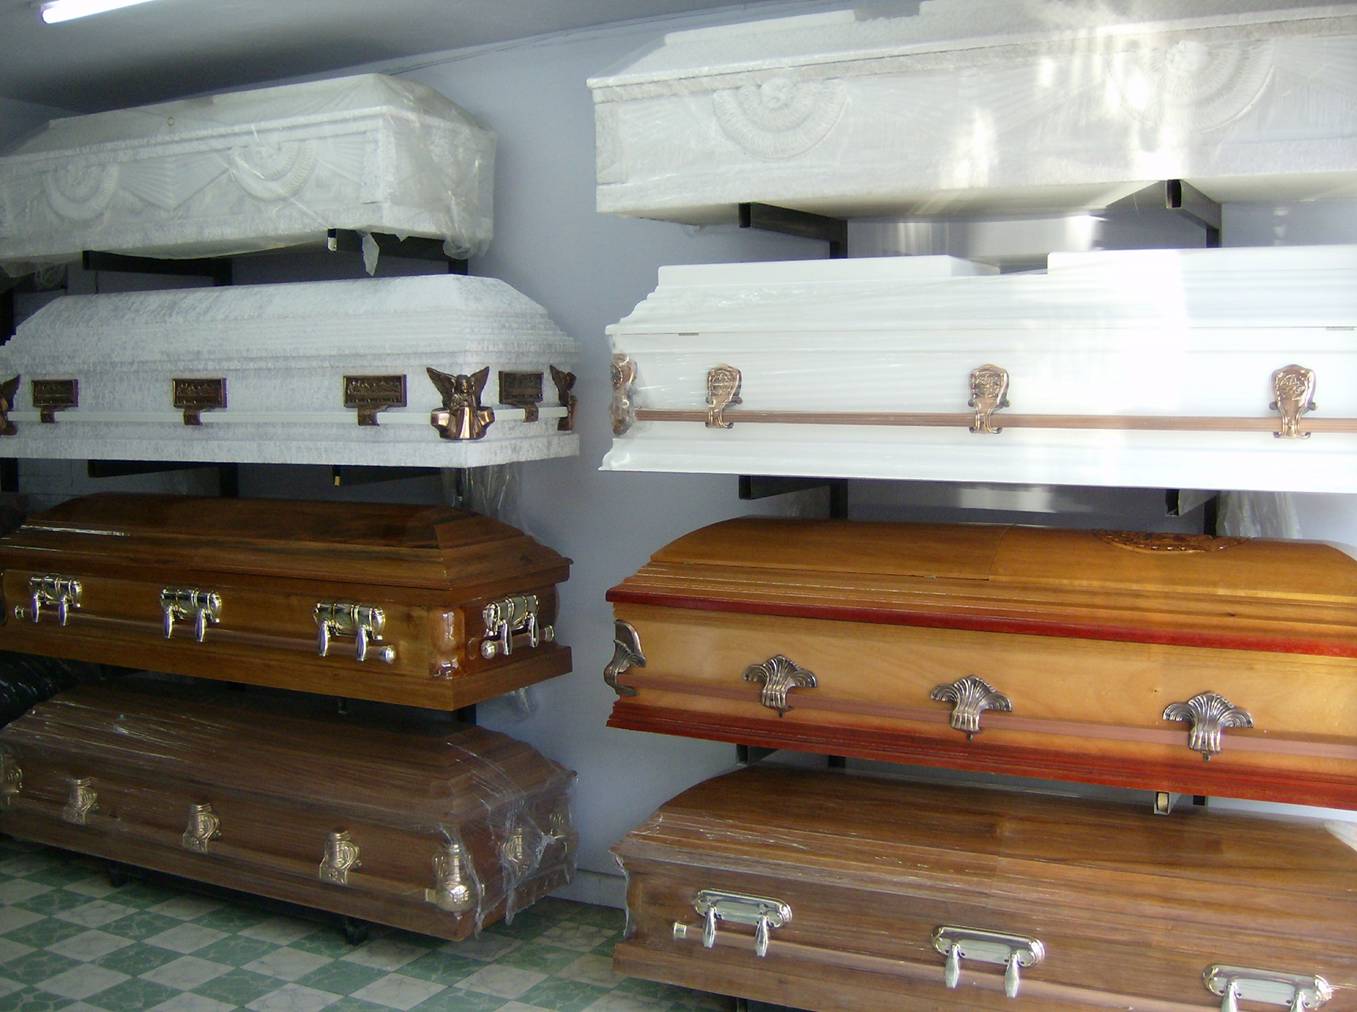 Pónganle cal y café en polvo para evitar el mal olor: La sugerencia de una funeraria en Guayaquil a familiares de los muertos (VIDEO)